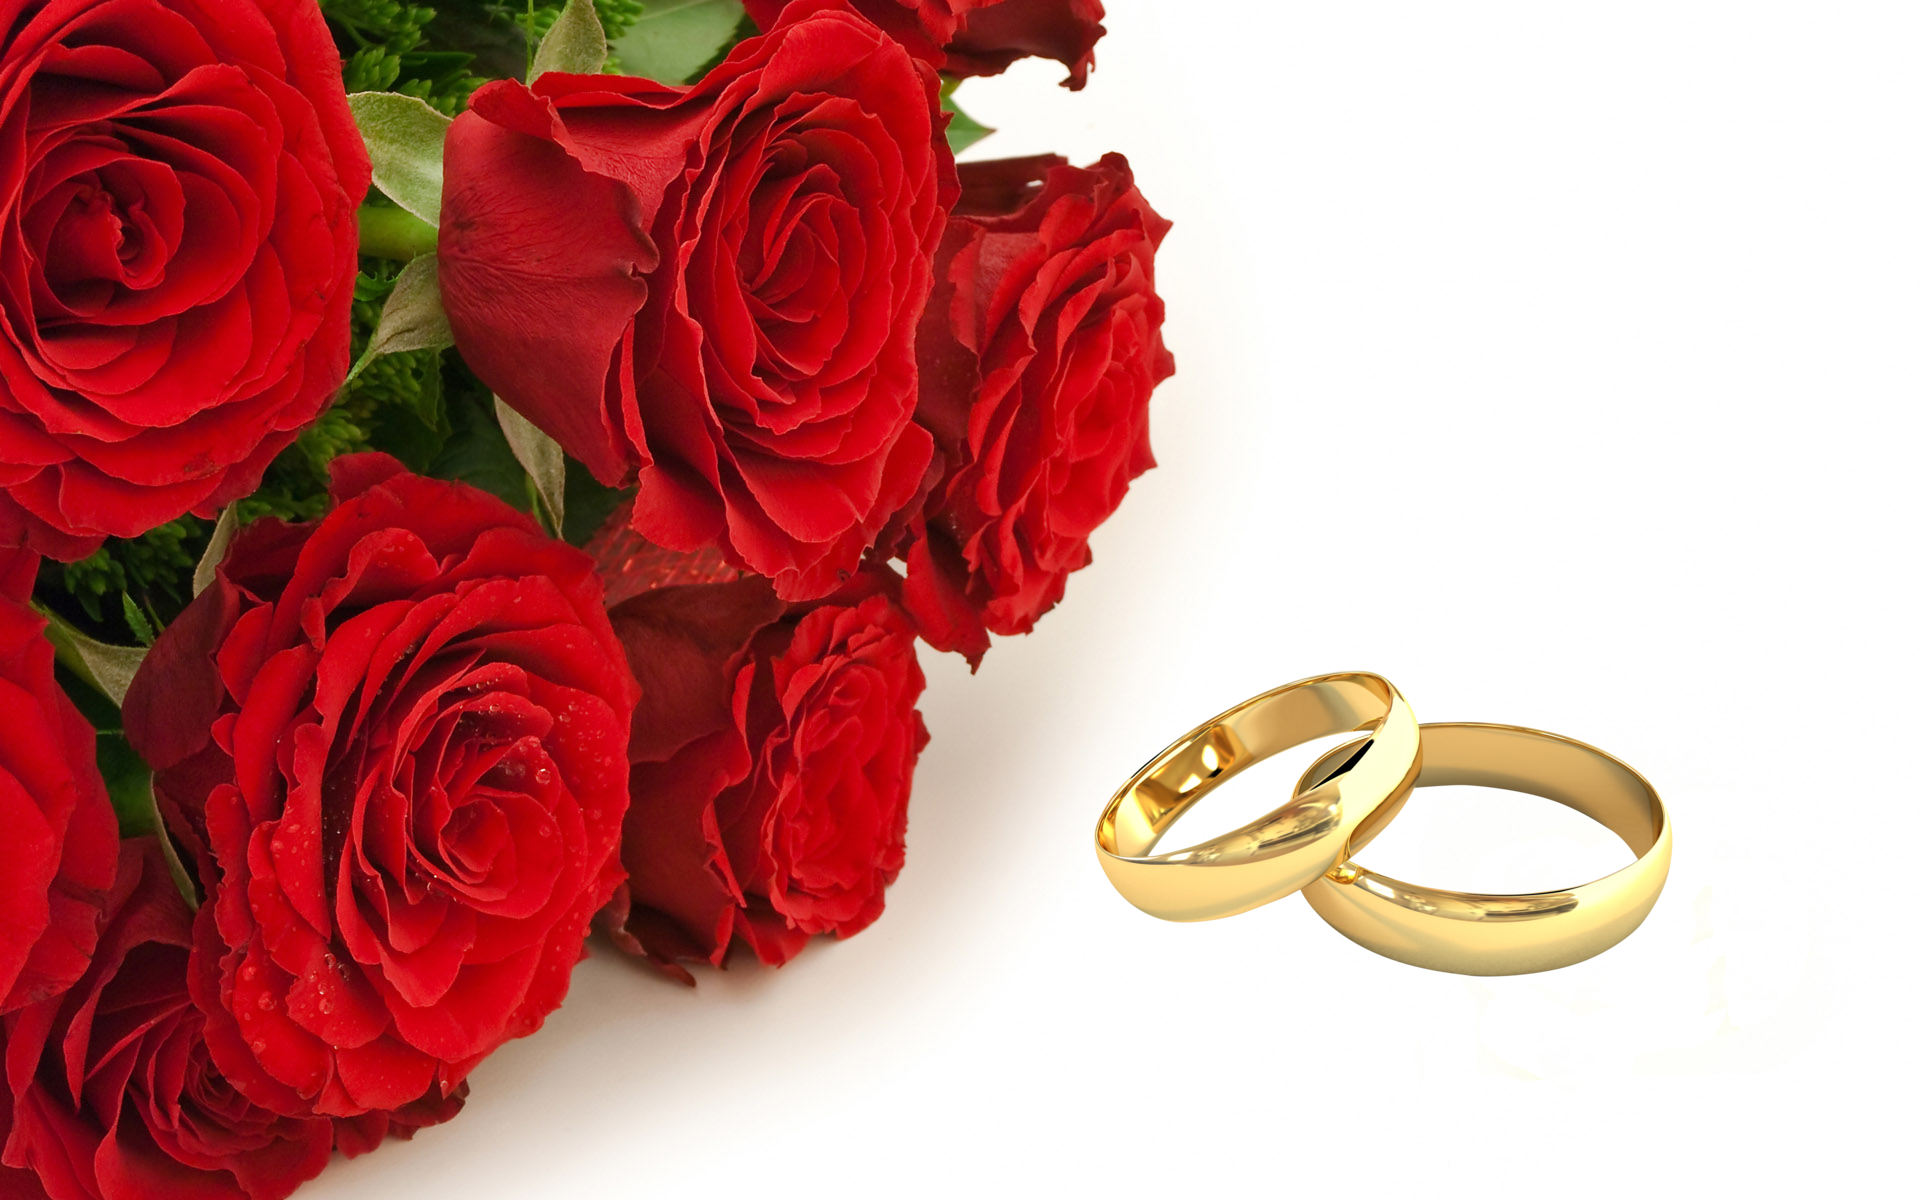 Свадебные кольца. Свадебный букет и кольца. Обручальные кольца и цветы. Свадебные кольца в цветах. С годовщиной 49 лет